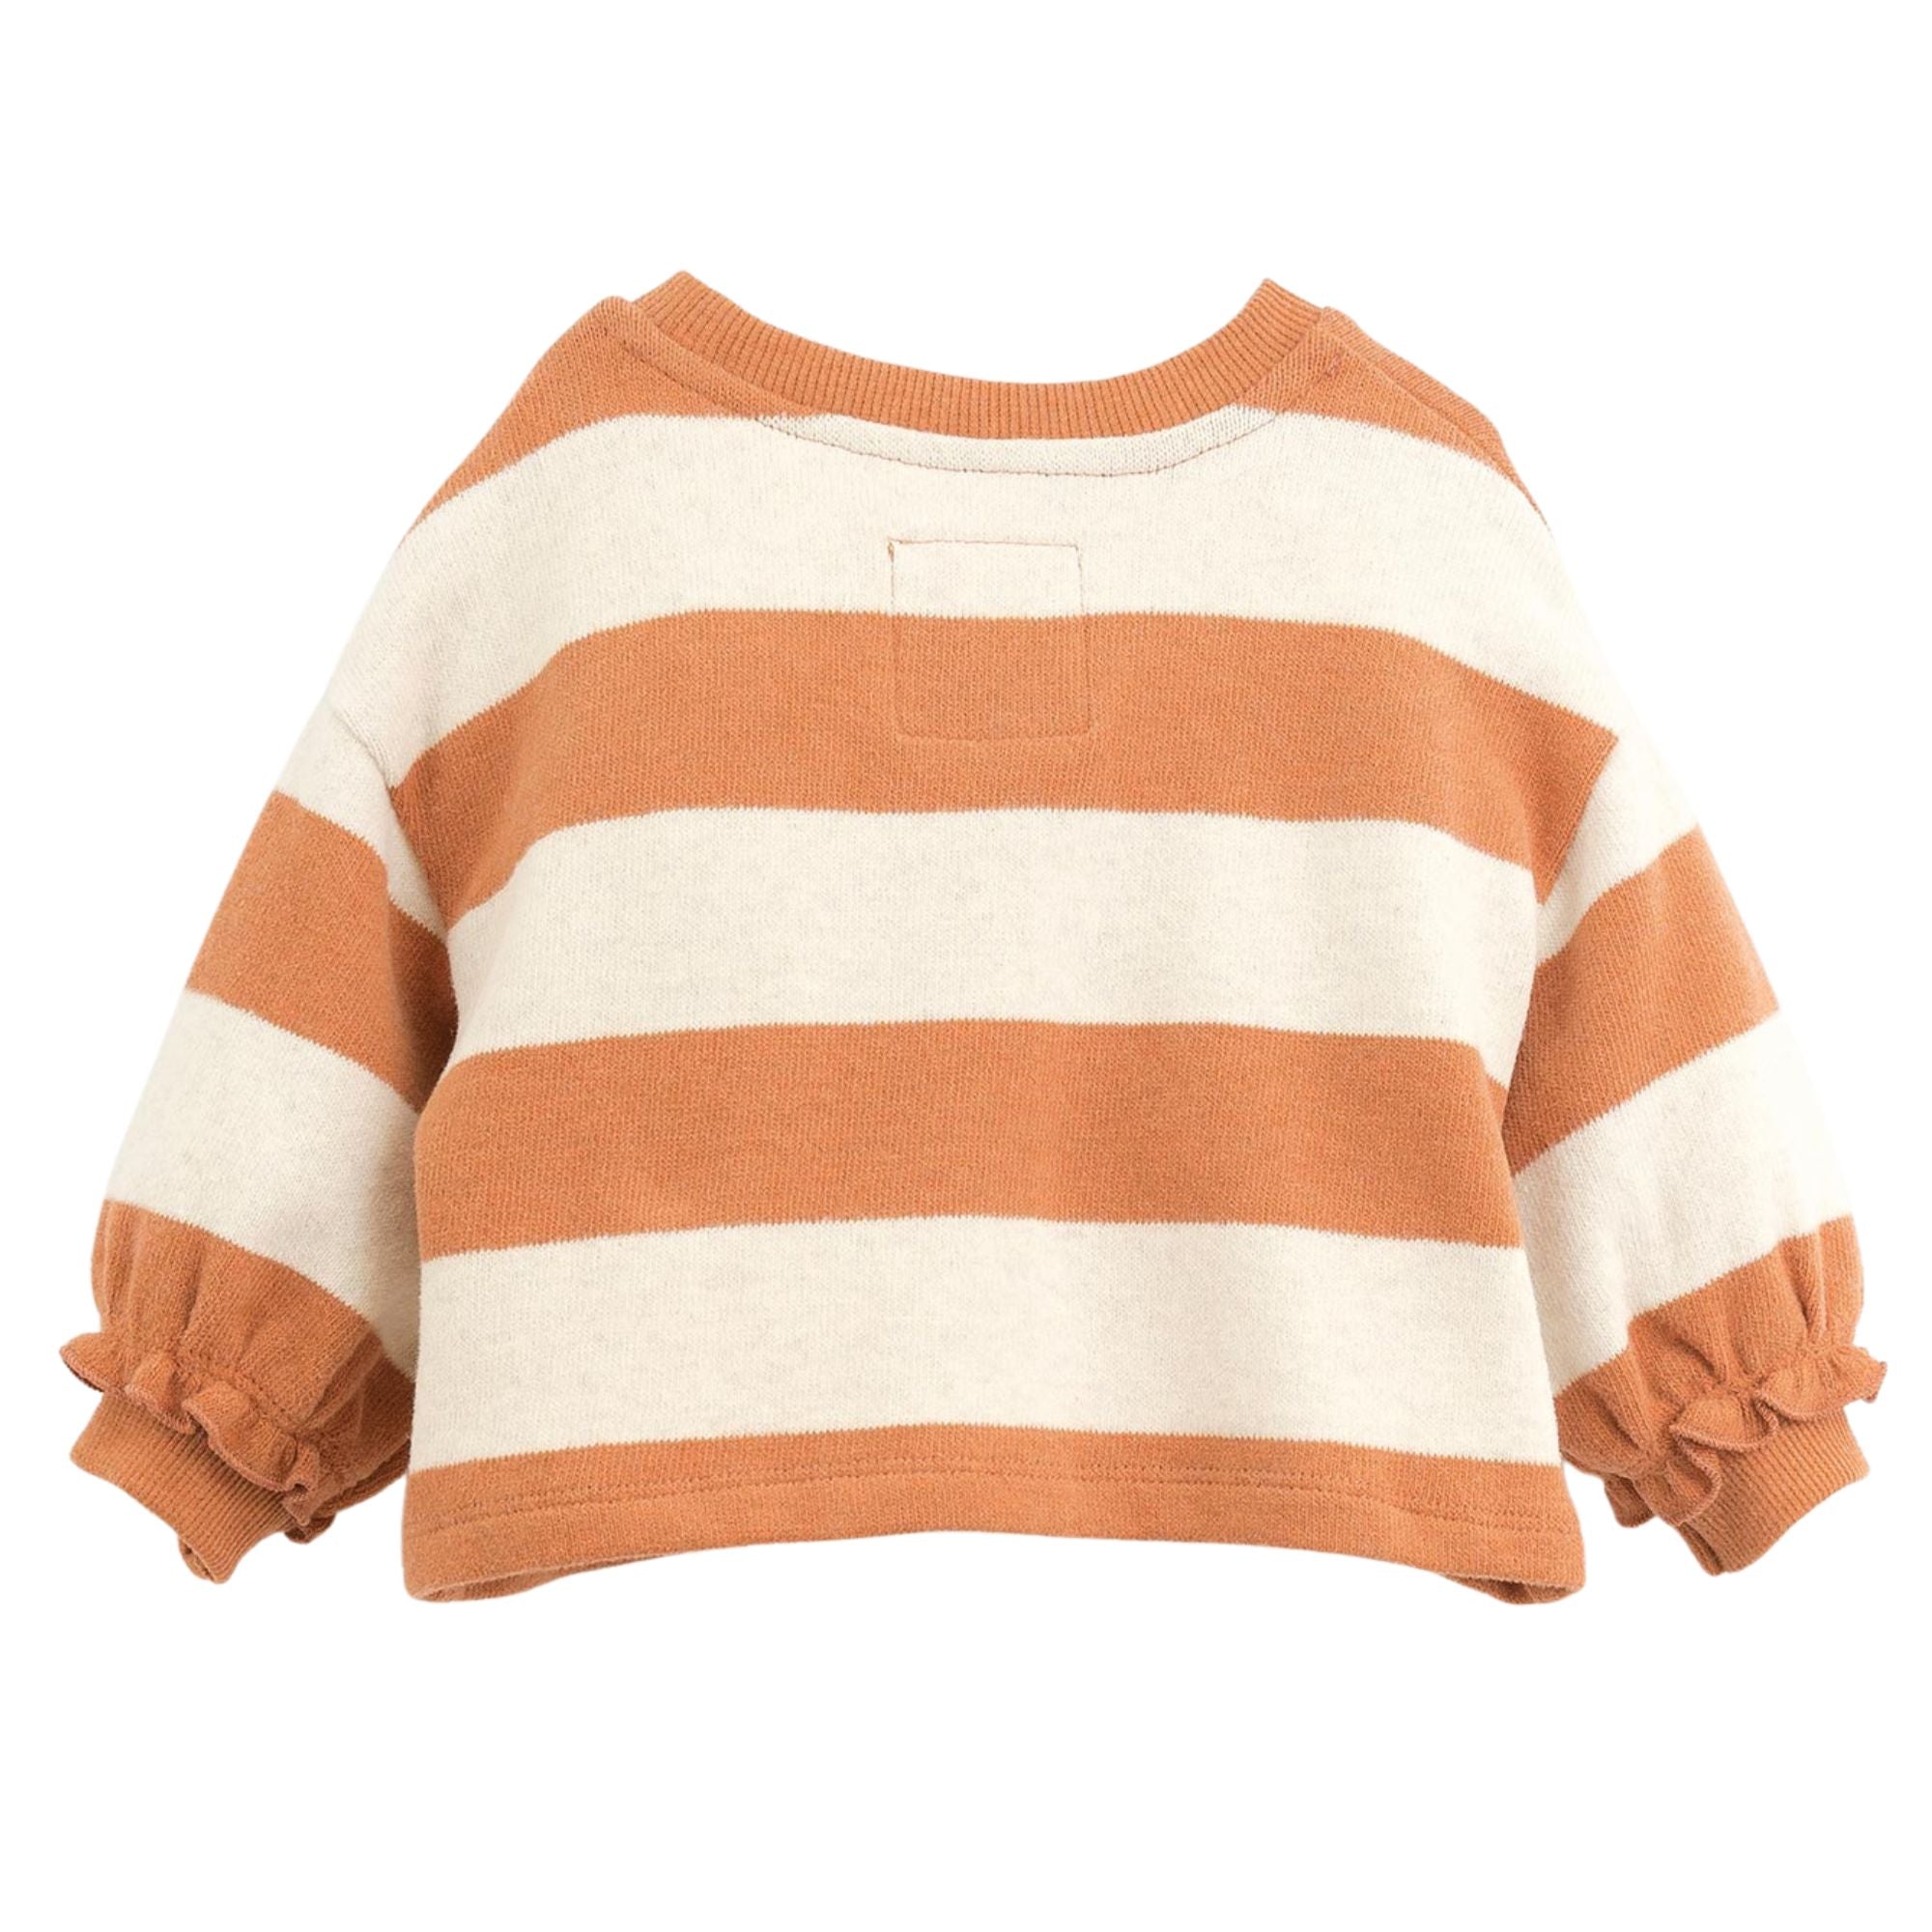 maglione-a-righe-colore-arancione-maniche-a-sbuffo